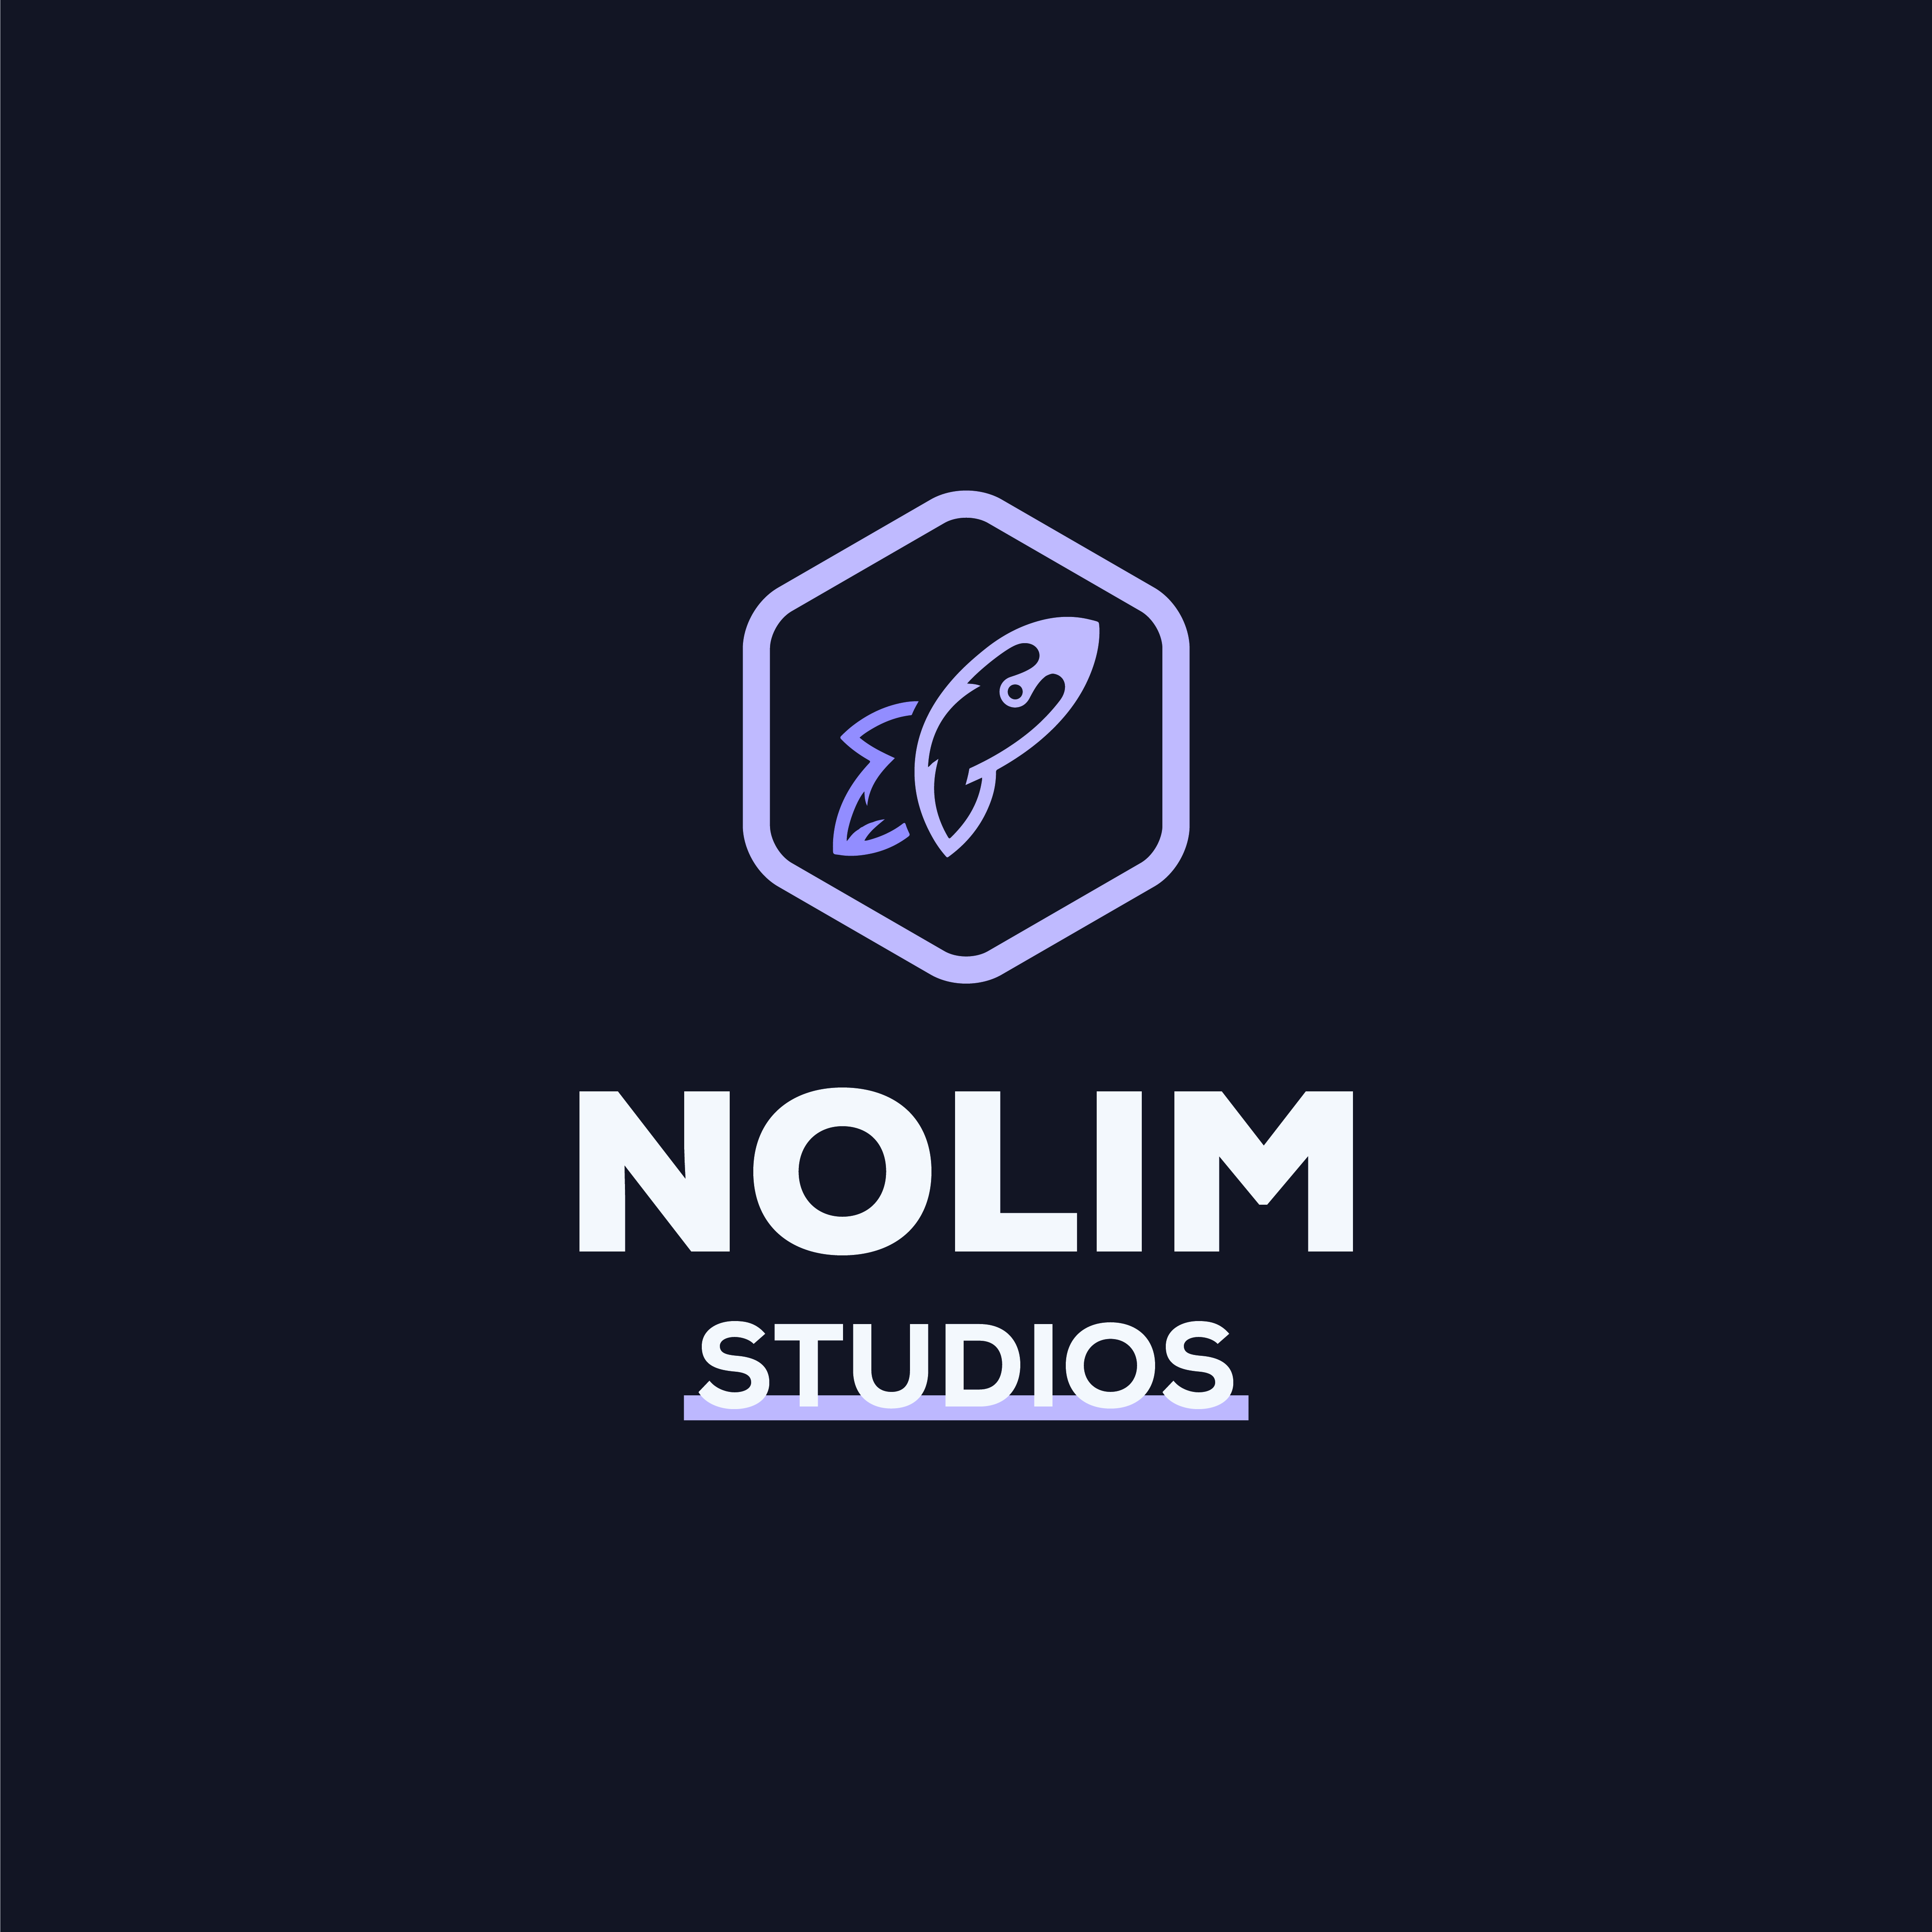 Nolim Studios